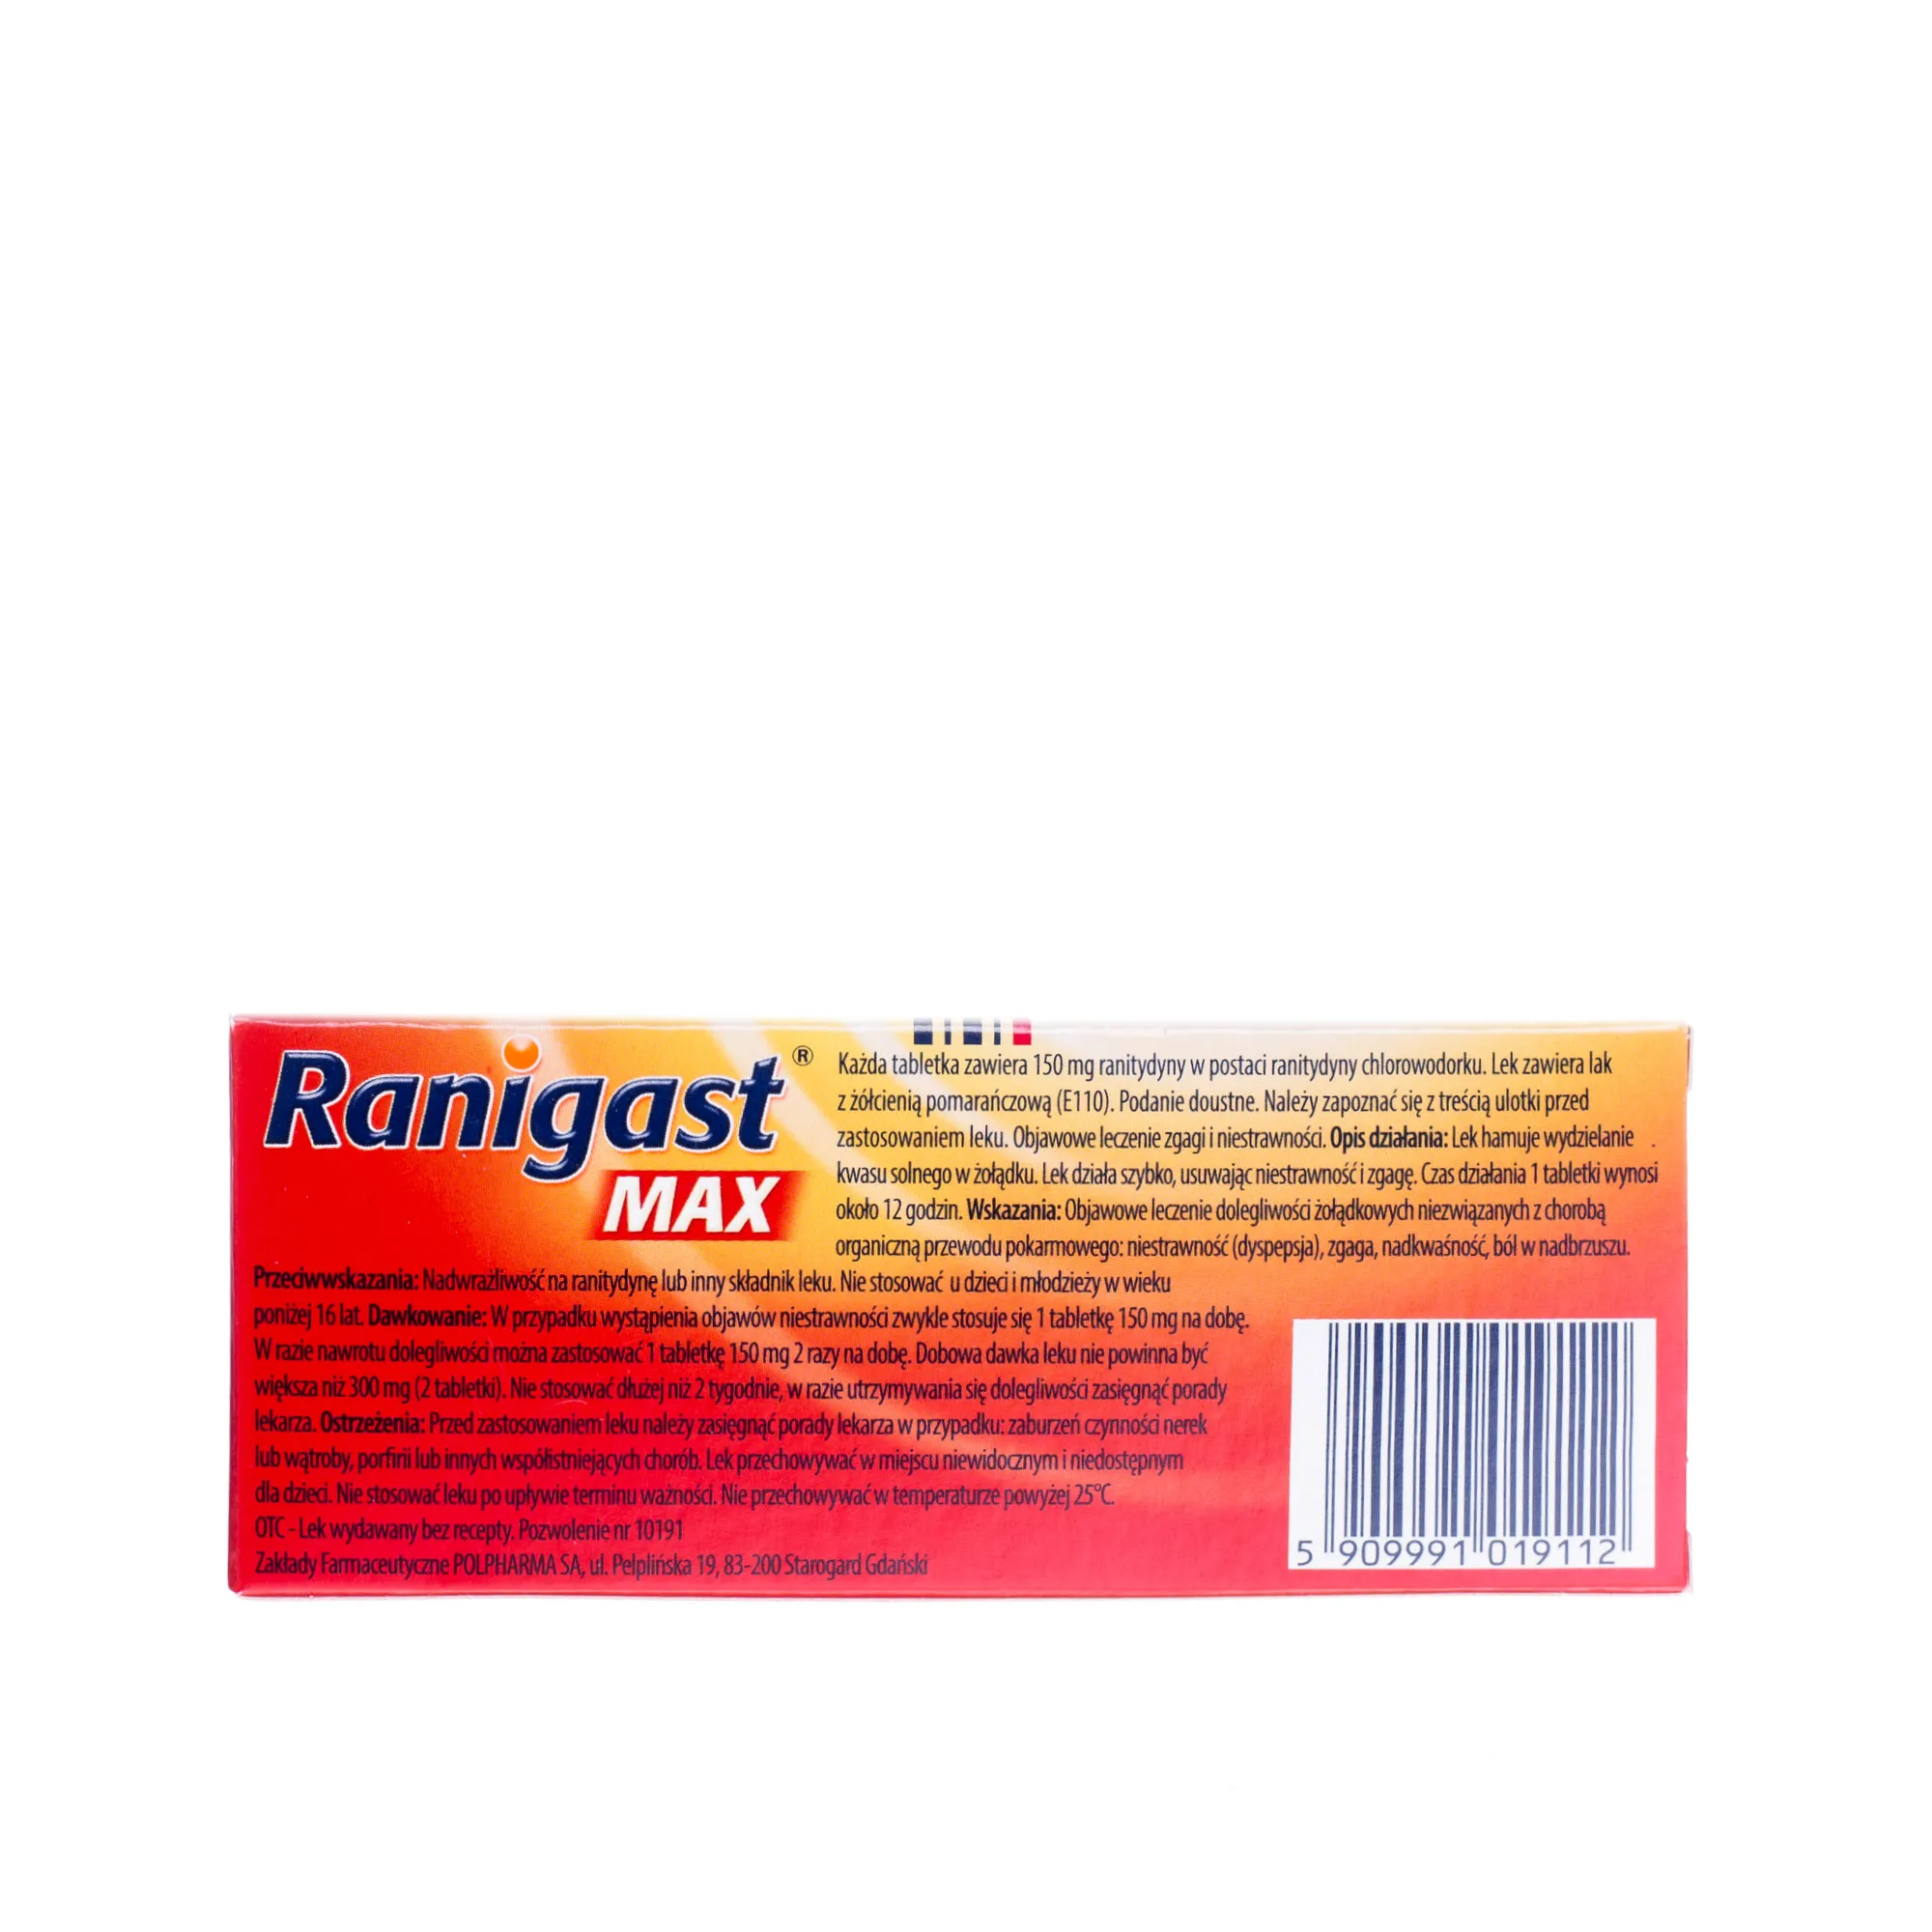 Ranigast Max 150 mg - 10 tabetek powlekanych stosowanych przy leczeniu zgagi i niestrawności 